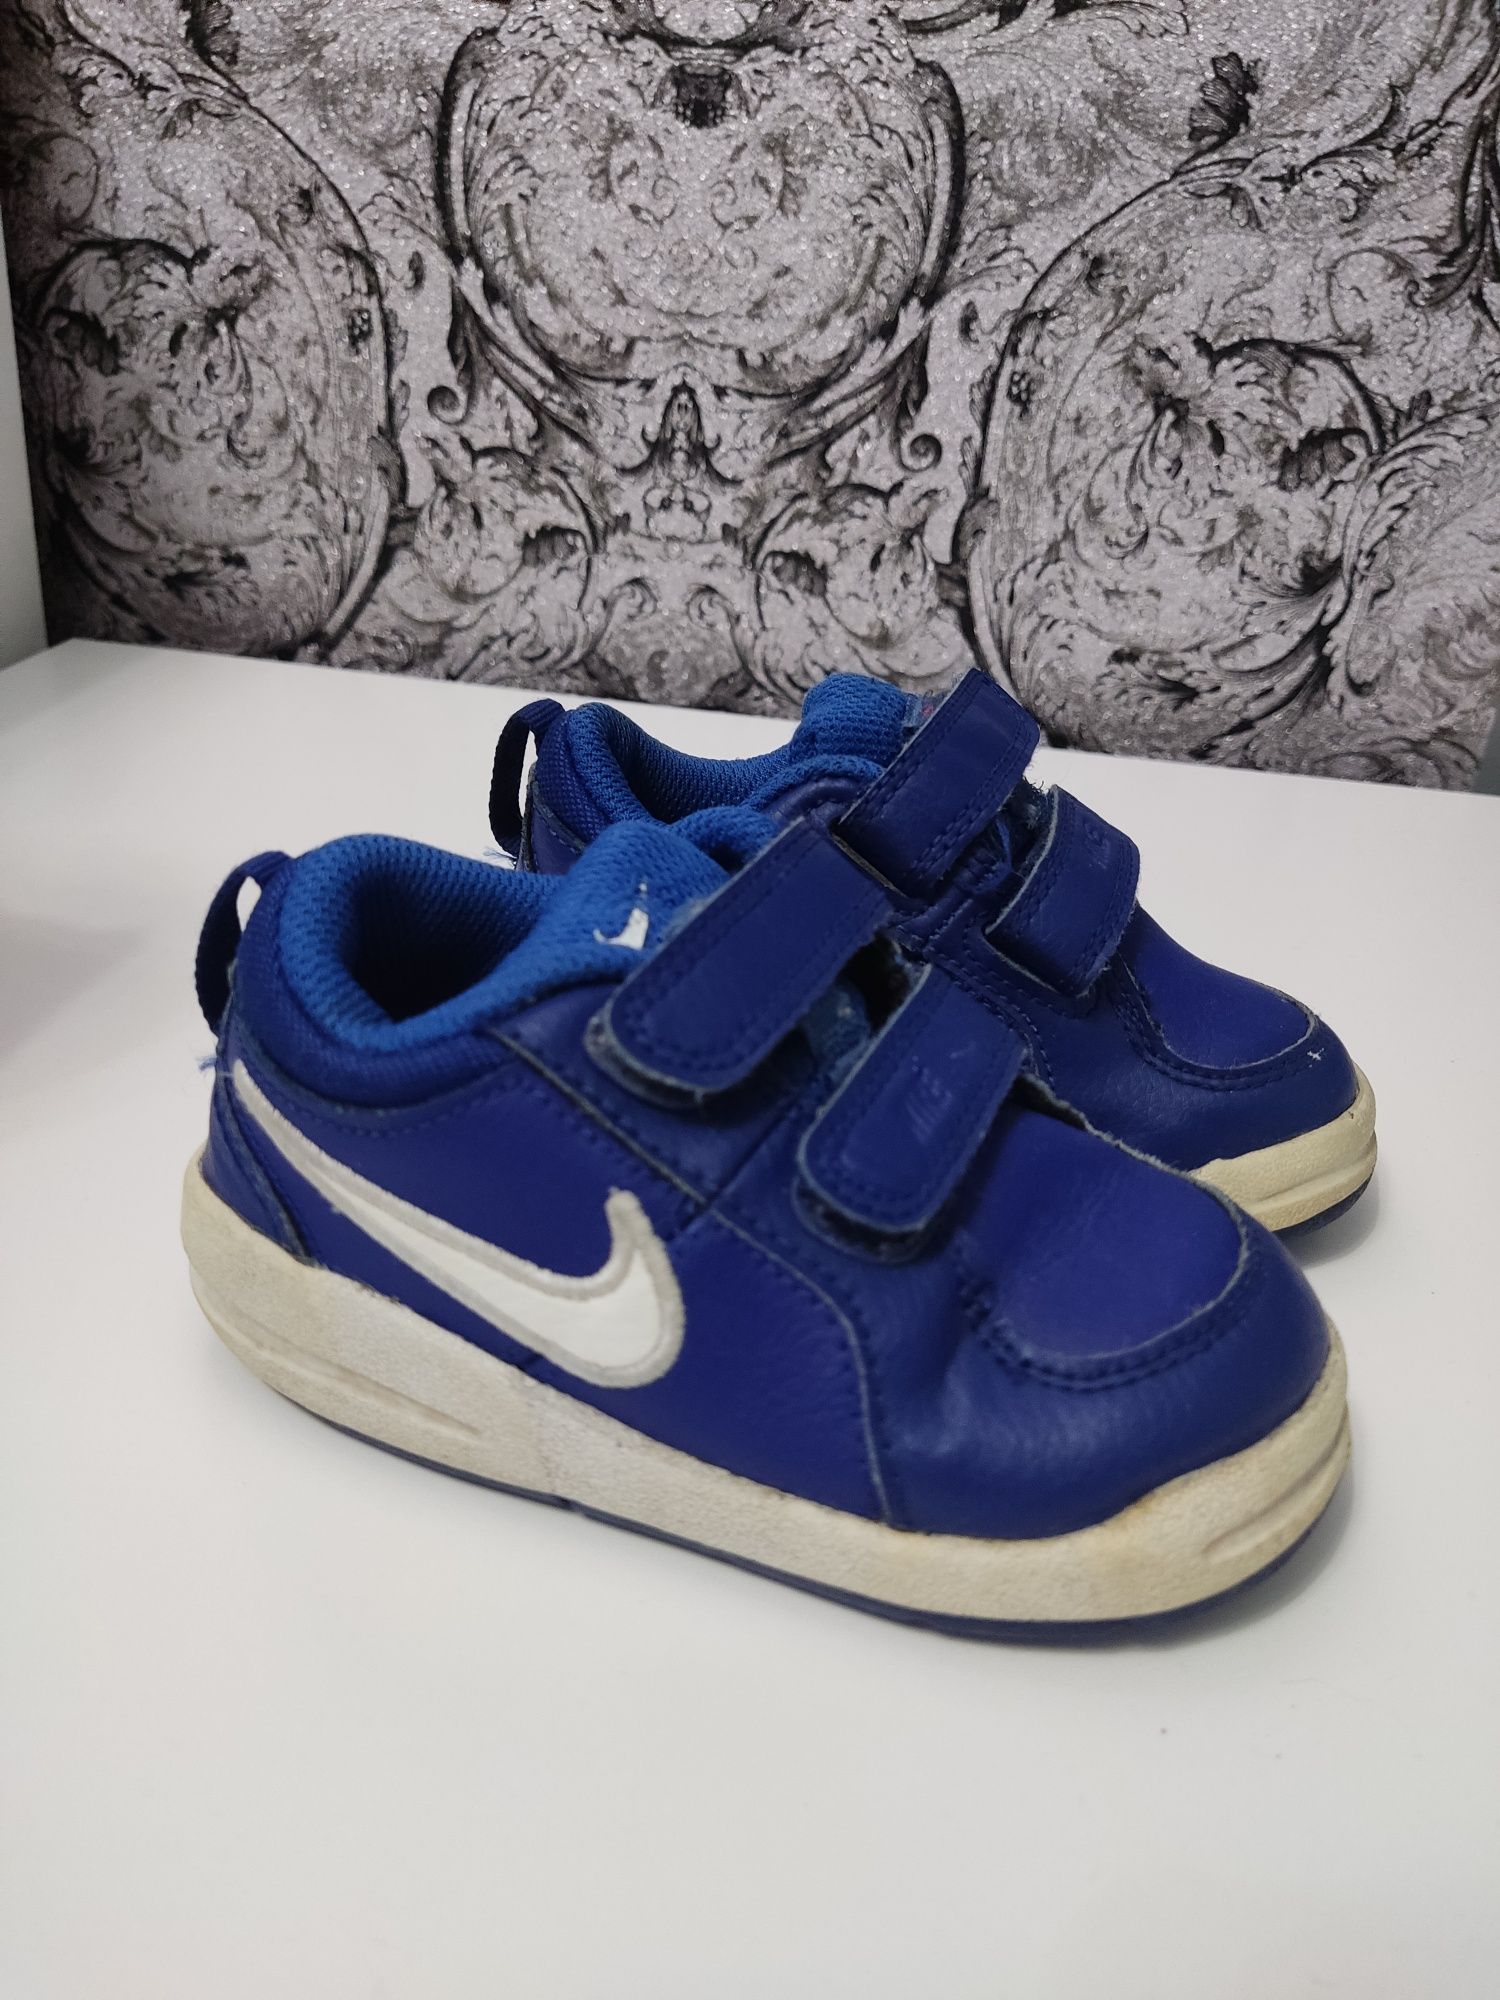 Buty adidasy Nike niebieskie dla chłopczyka rzepy rozmiar 22 wkładka 1  Pabianice • OLX.pl